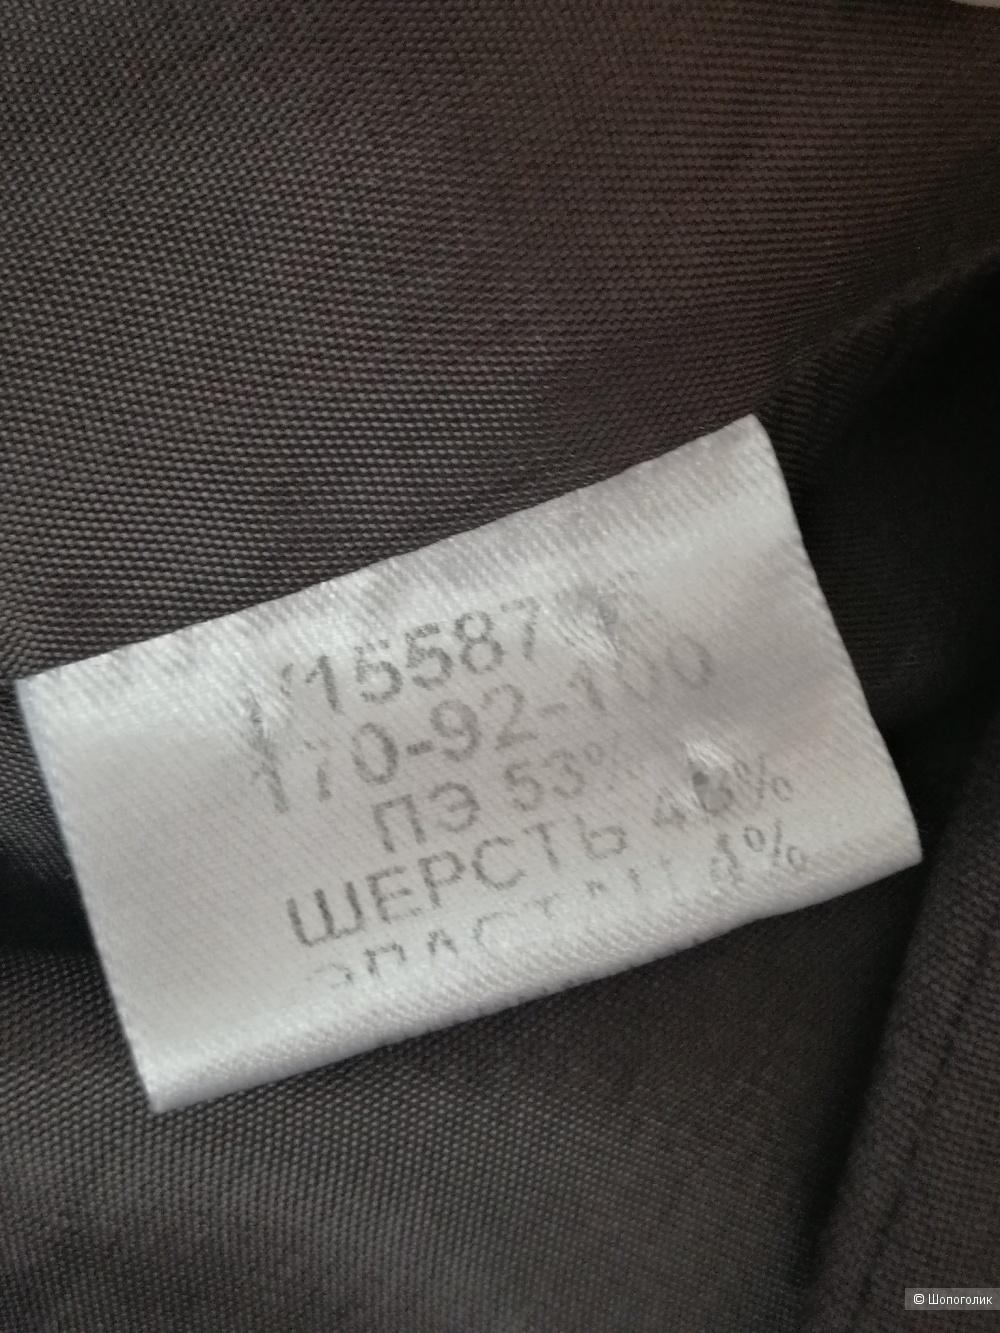 Костюм с юбкой Vassa&Co, шоколадный цвет, размер 46-48